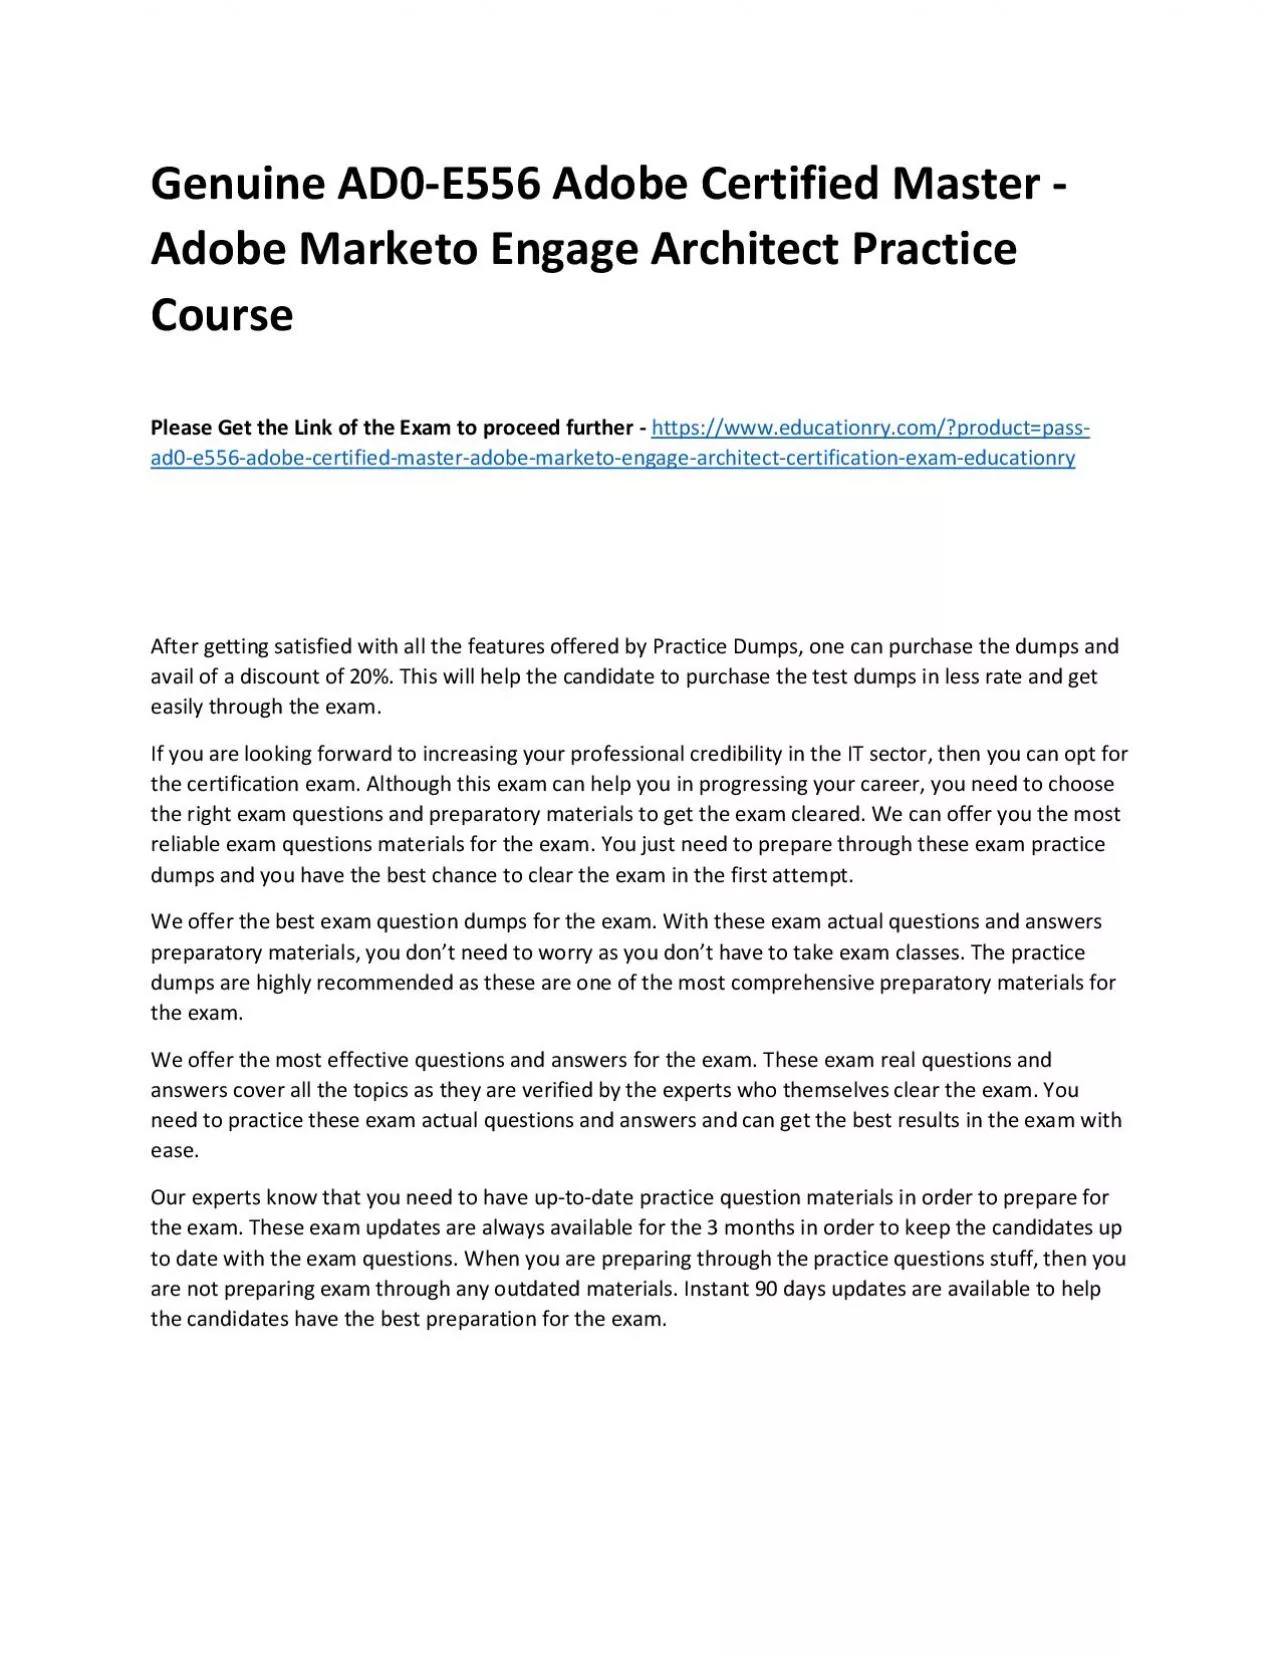 Genuine AD0-E556 Adobe Certified Master - Adobe Marketo Engage Architect Practice Course